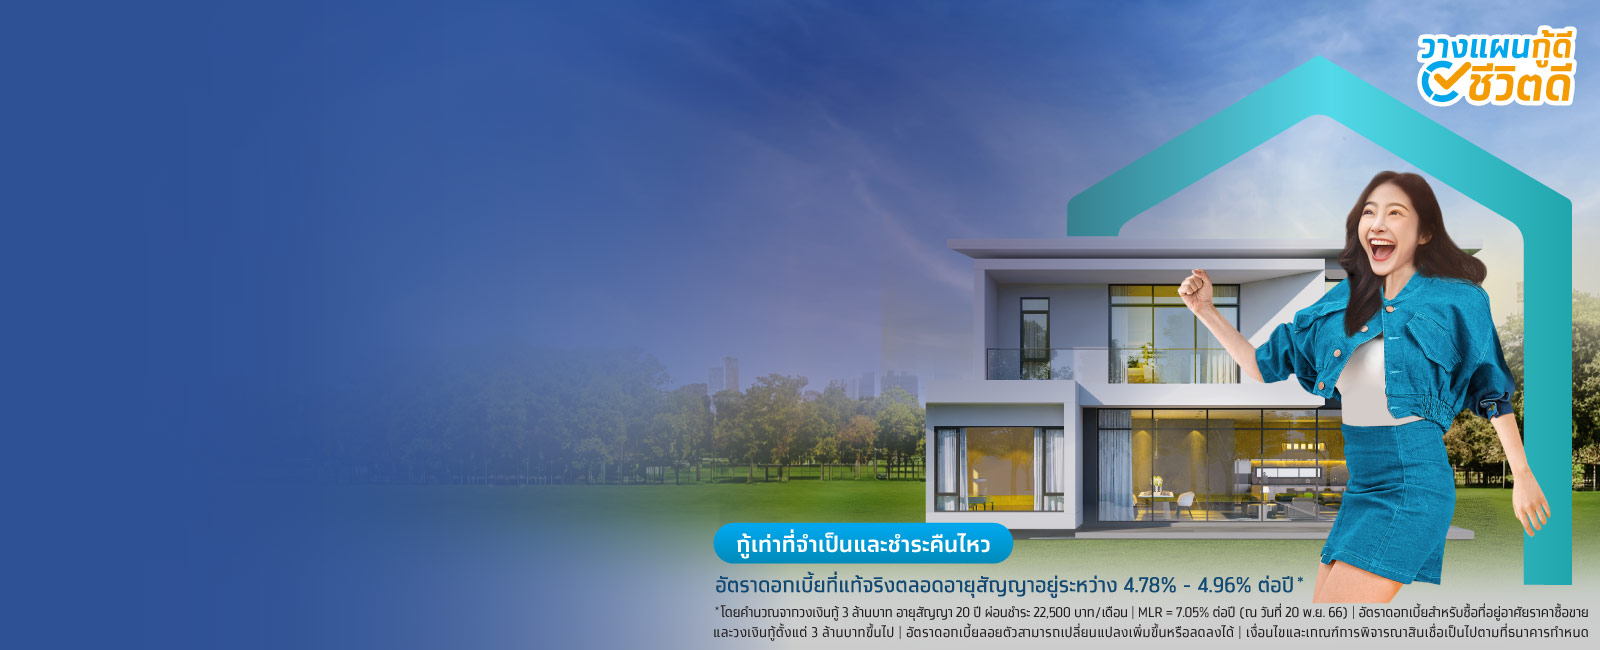 สินเชื่อบ้านกรุงไทย กู้ซื้อบ้าน กู้เงินสร้างบ้าน ผ่อนบ้านกับธนาคาร